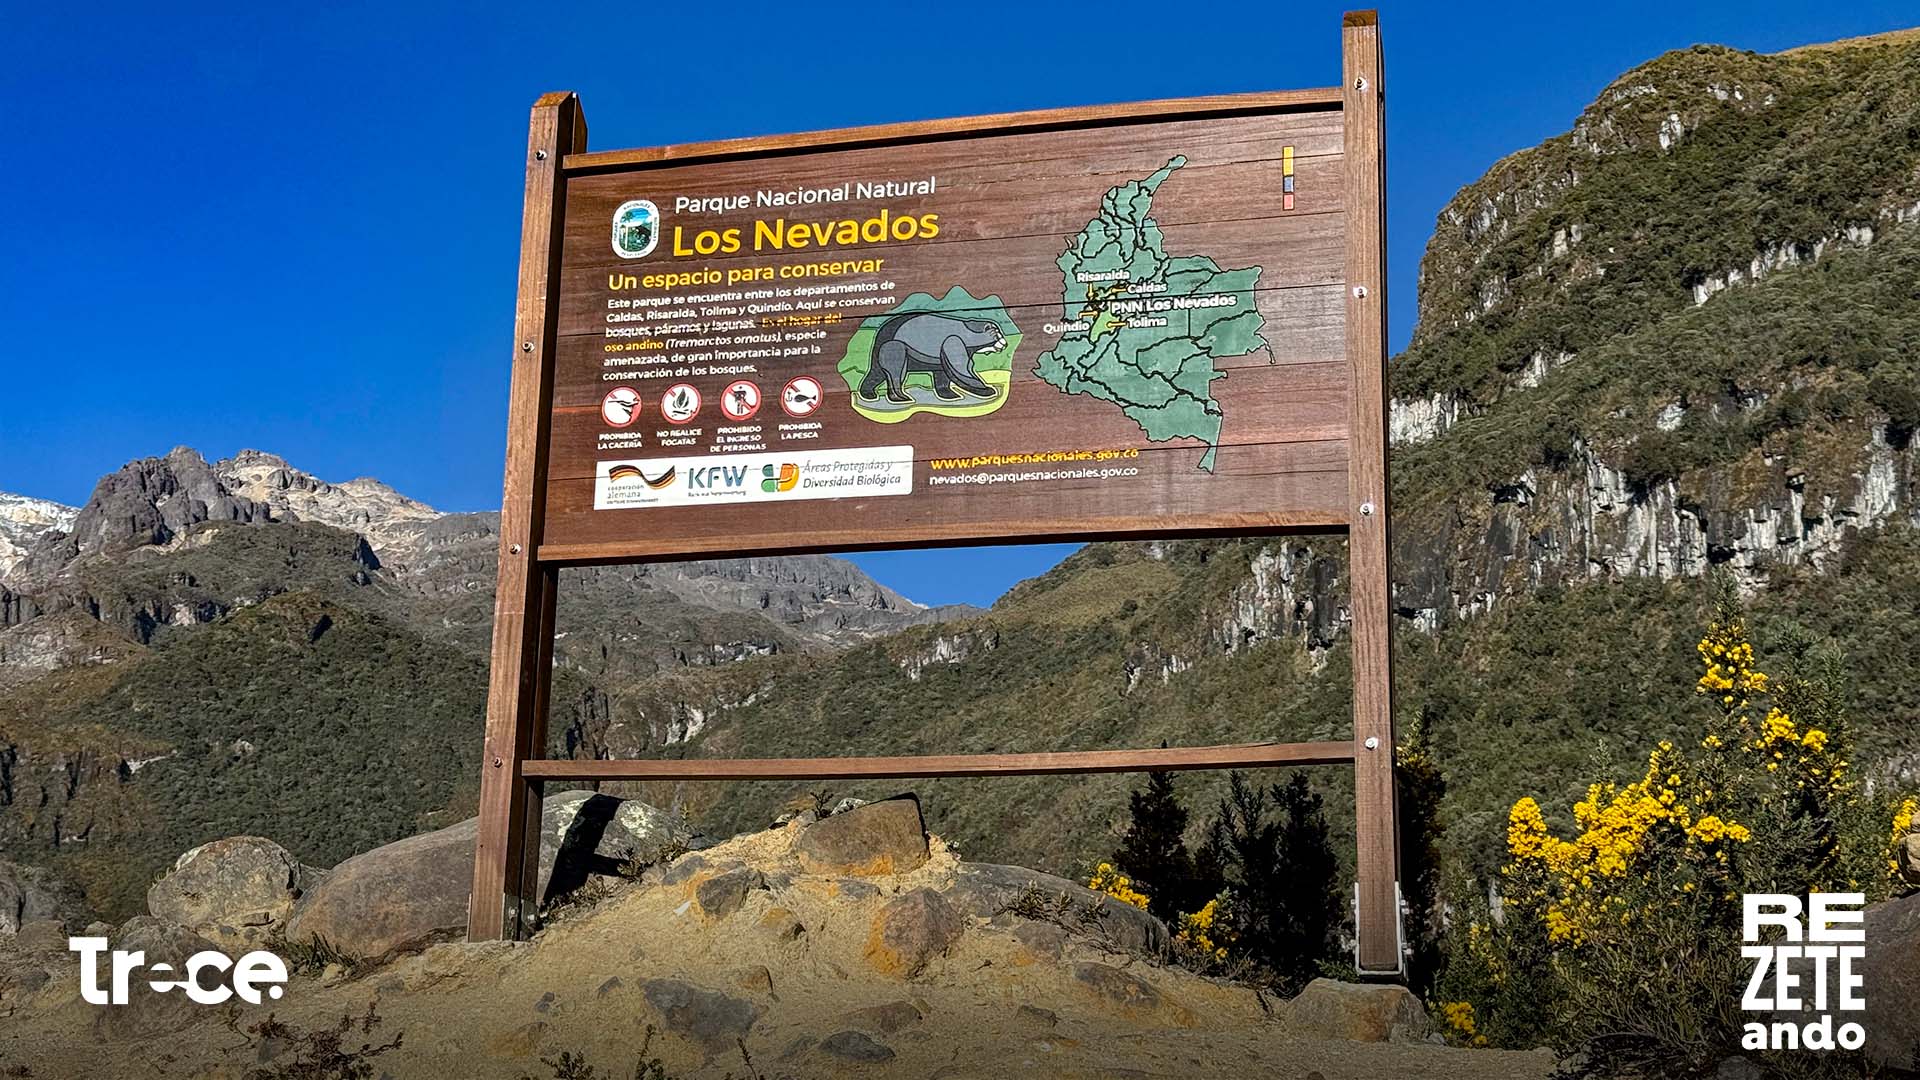 Parque Nacional Natural Los Nevados, Murillo, Tolima.